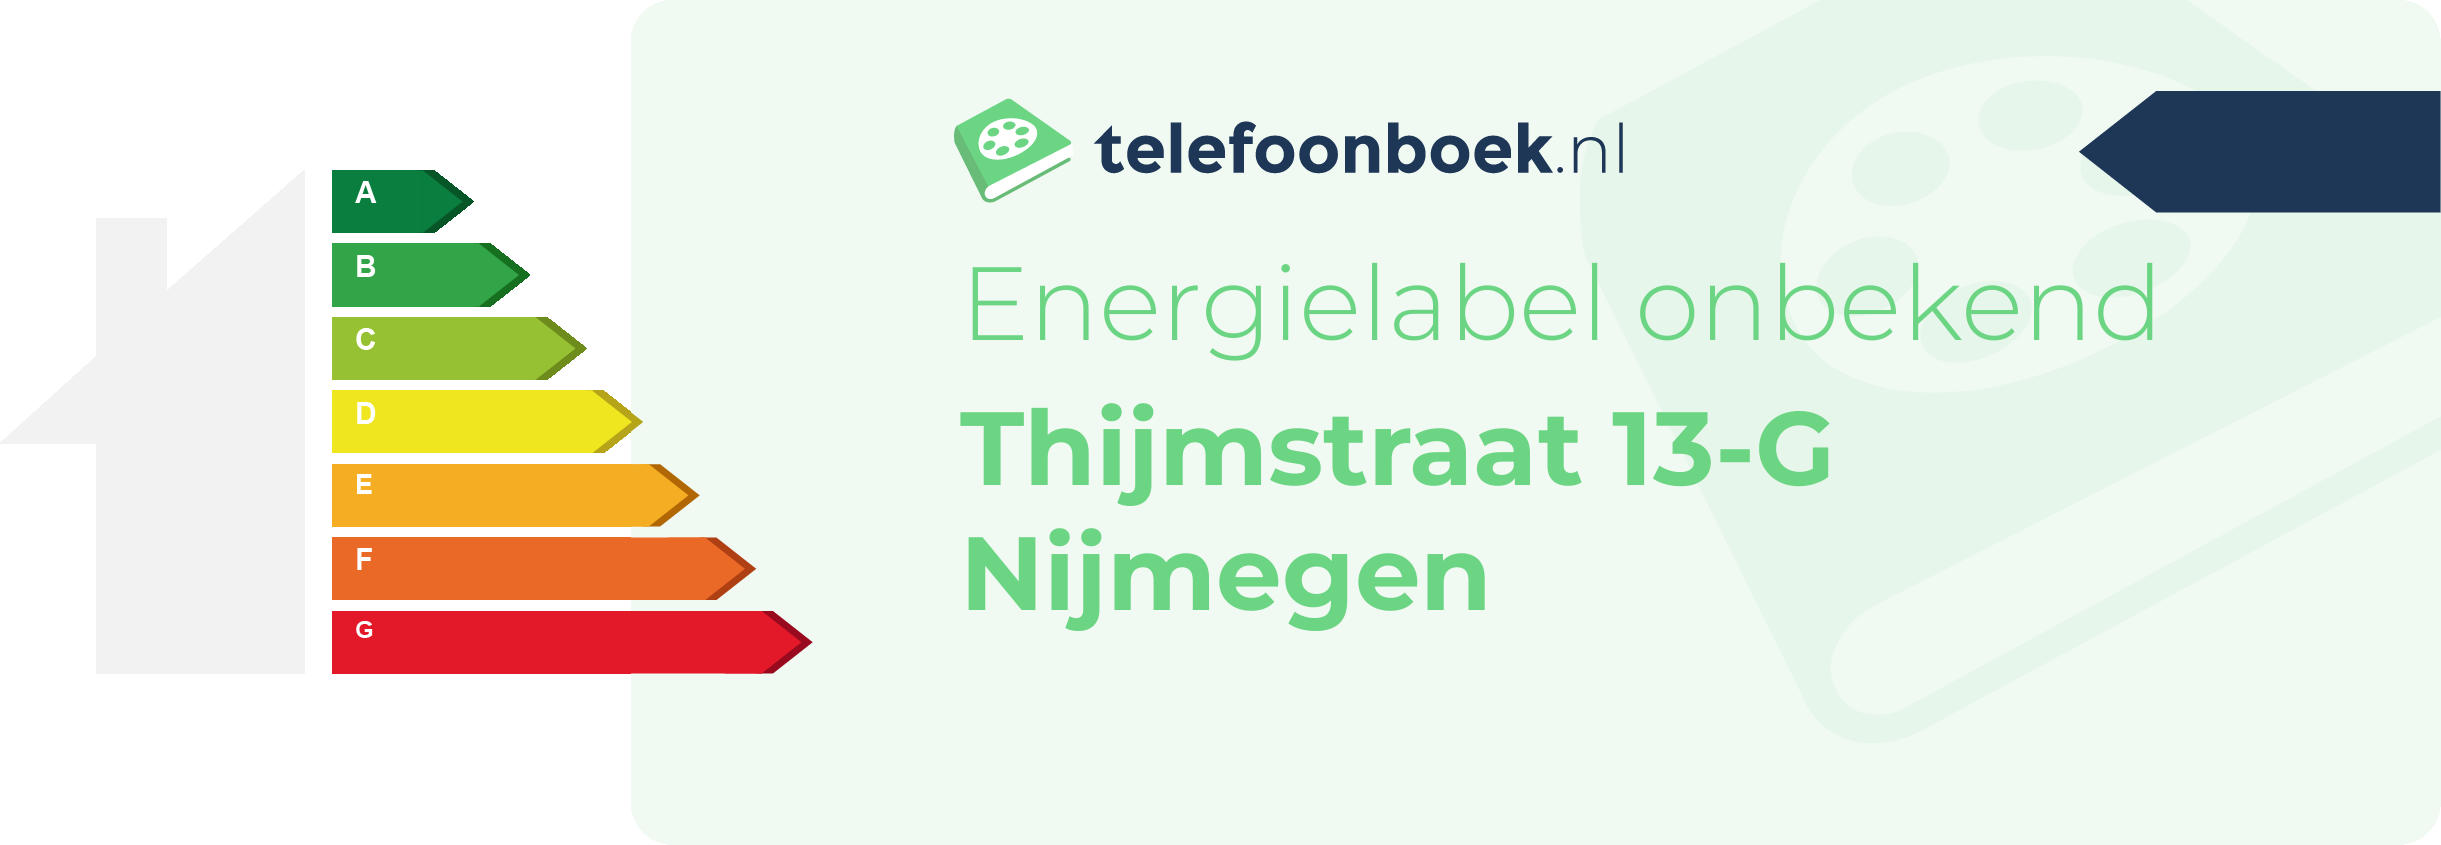 Energielabel Thijmstraat 13-G Nijmegen